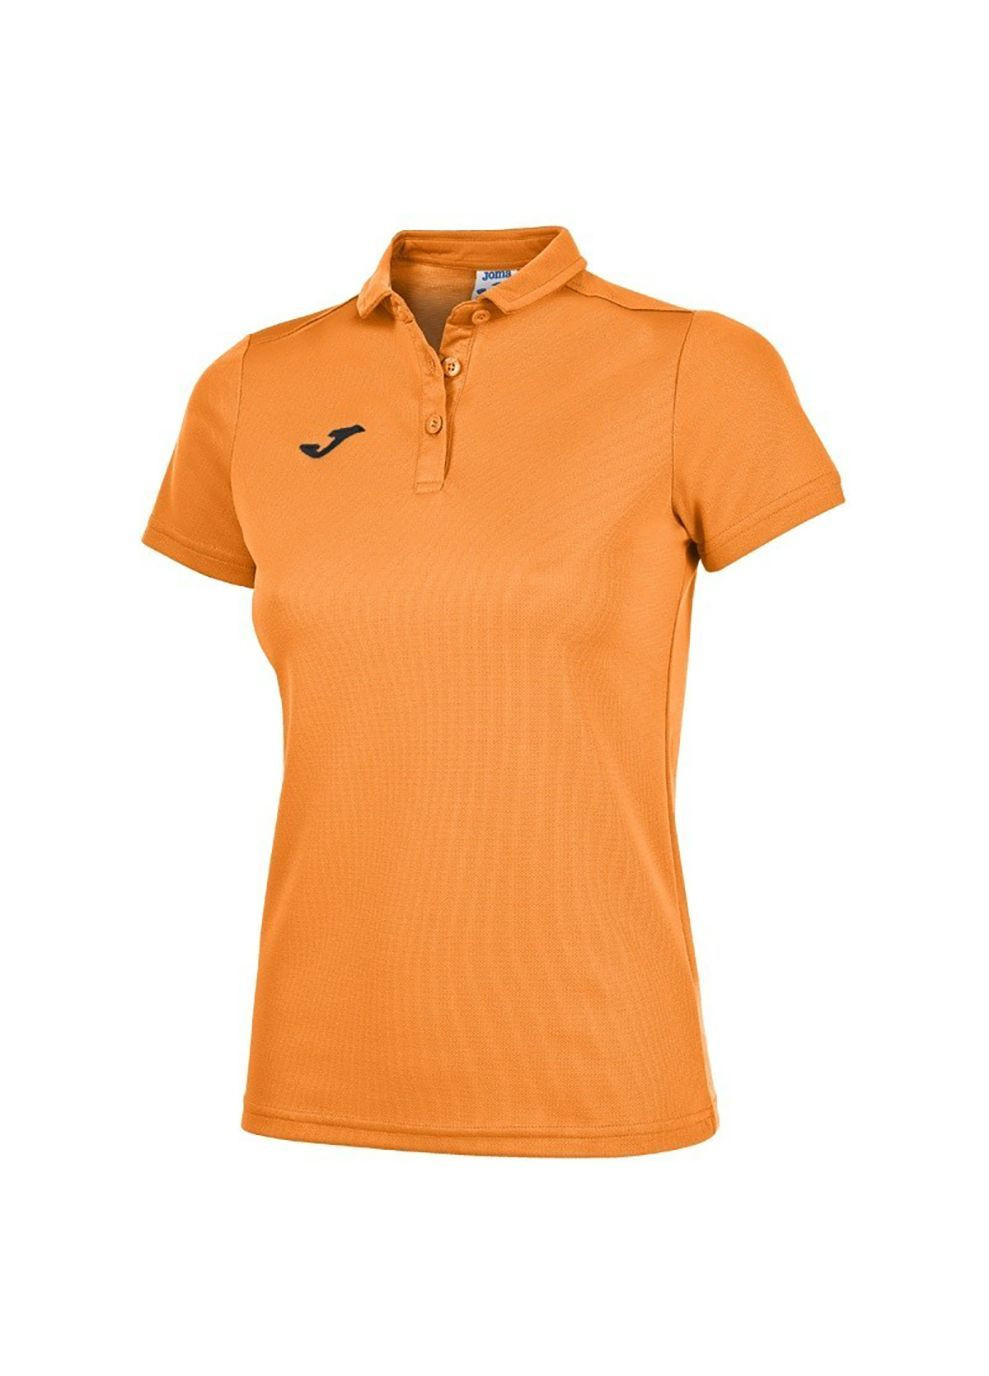 Оранжевая женская футболка-поло hobby оранжевый Joma однотонная